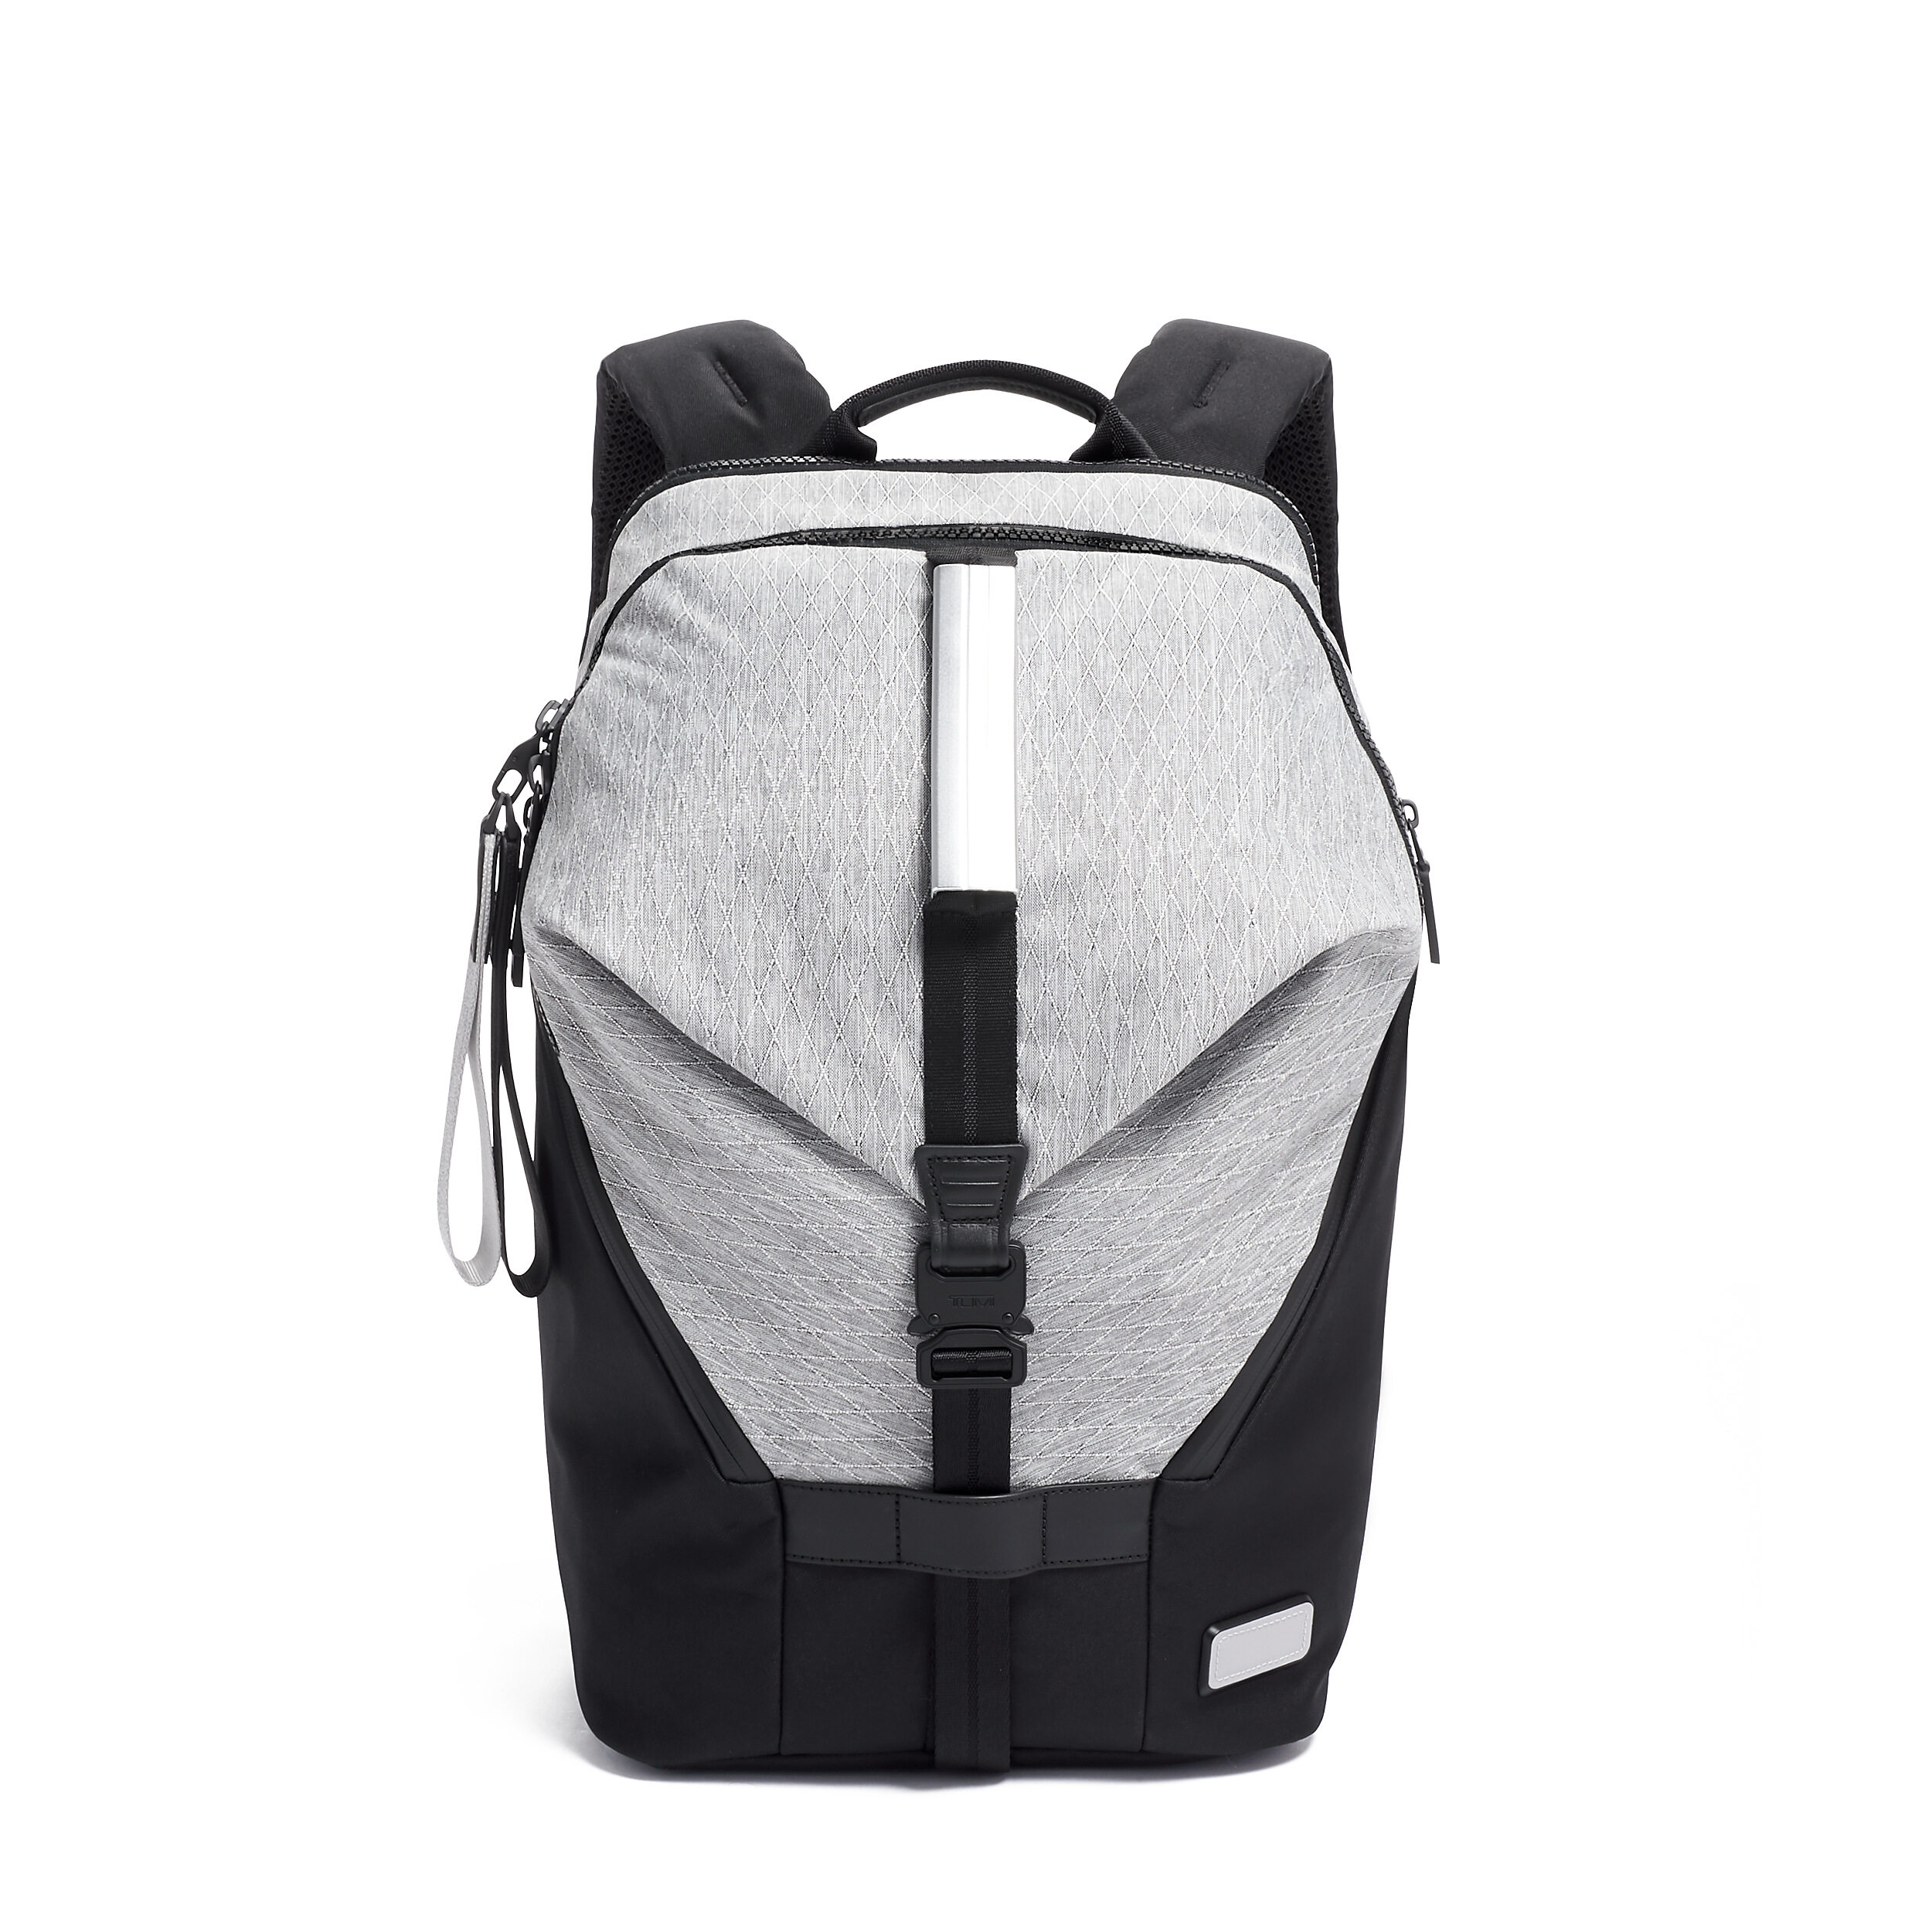 Tumi Backpack ราคาถูก ซื้อออนไลน์ที่ - เม.ย. 2022 | Lazada.co.th